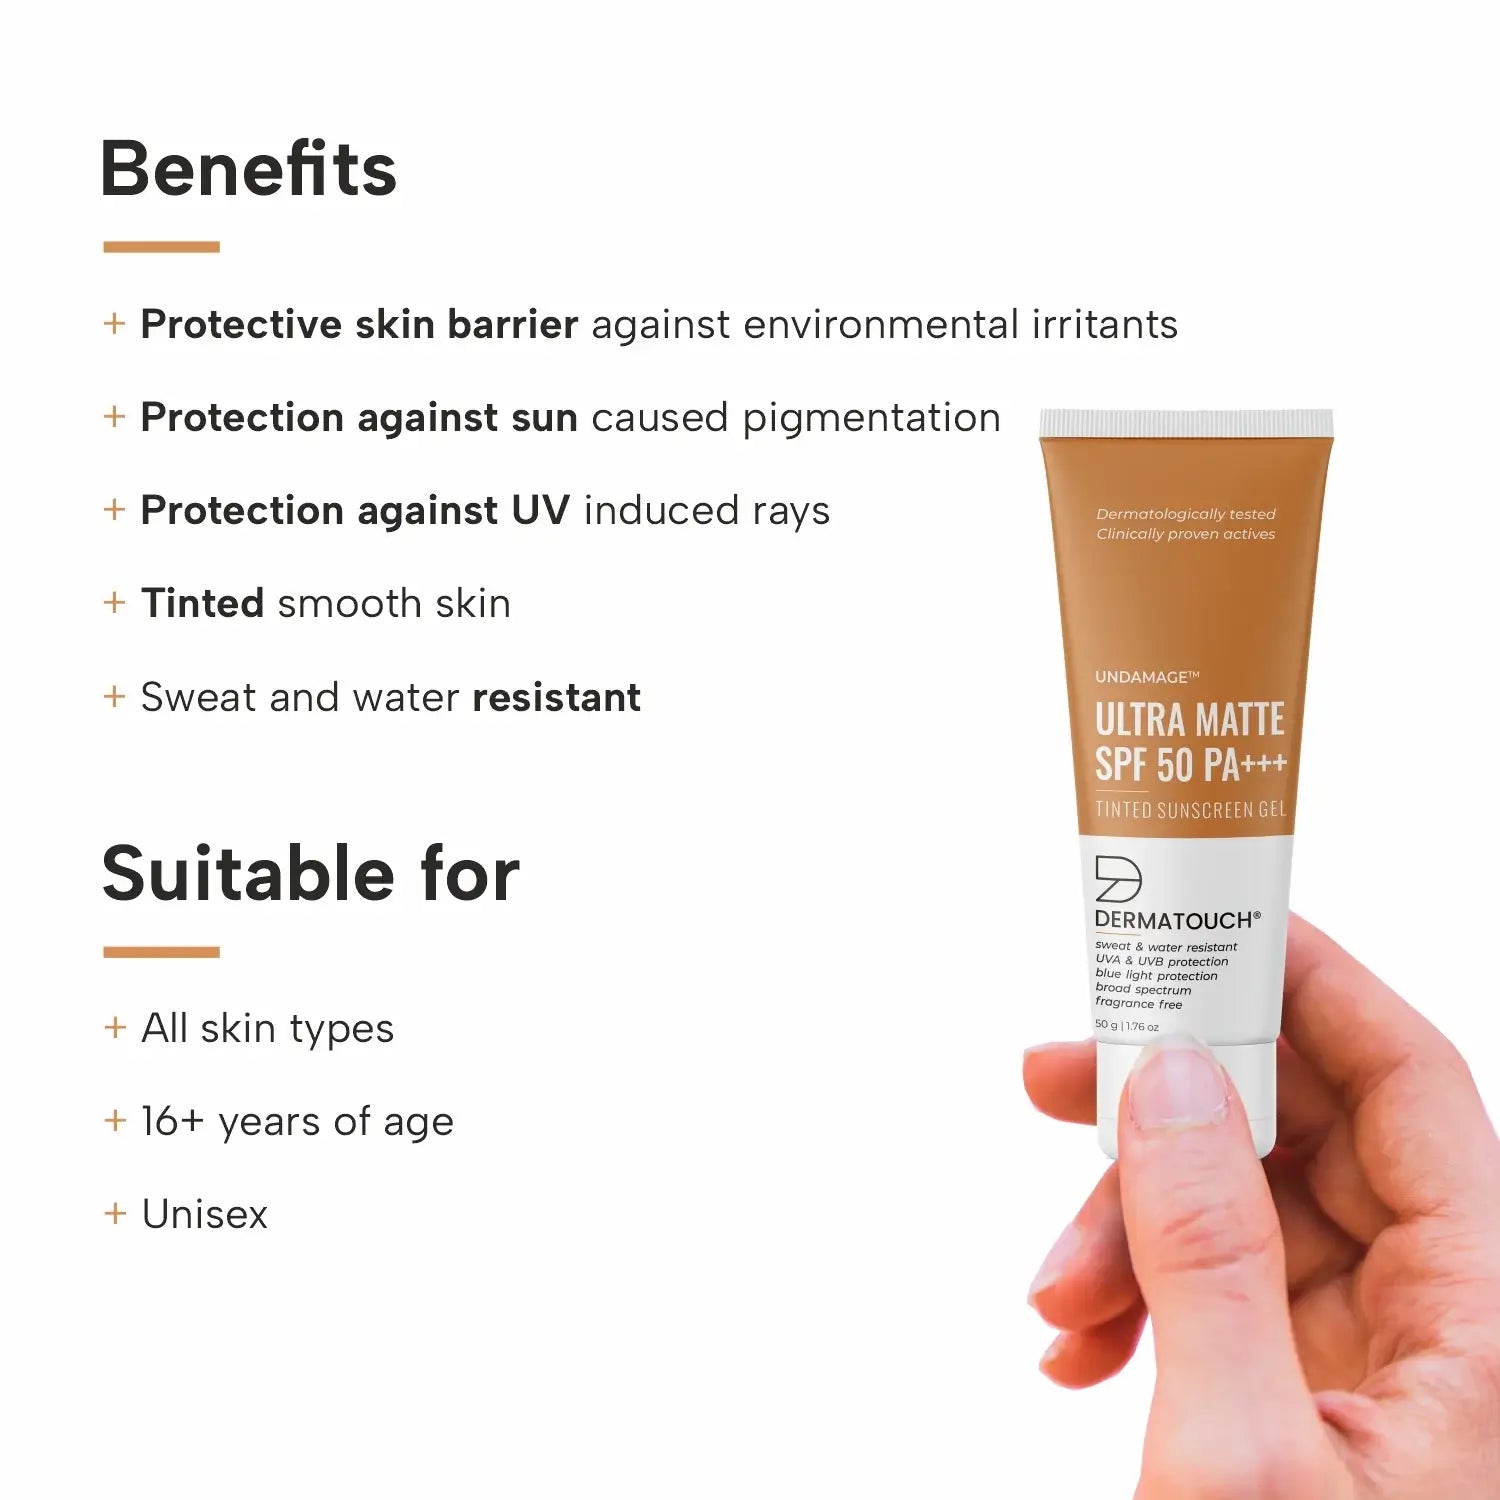 Benefits of Undamage Ultra Matte Tinted Sunscreen